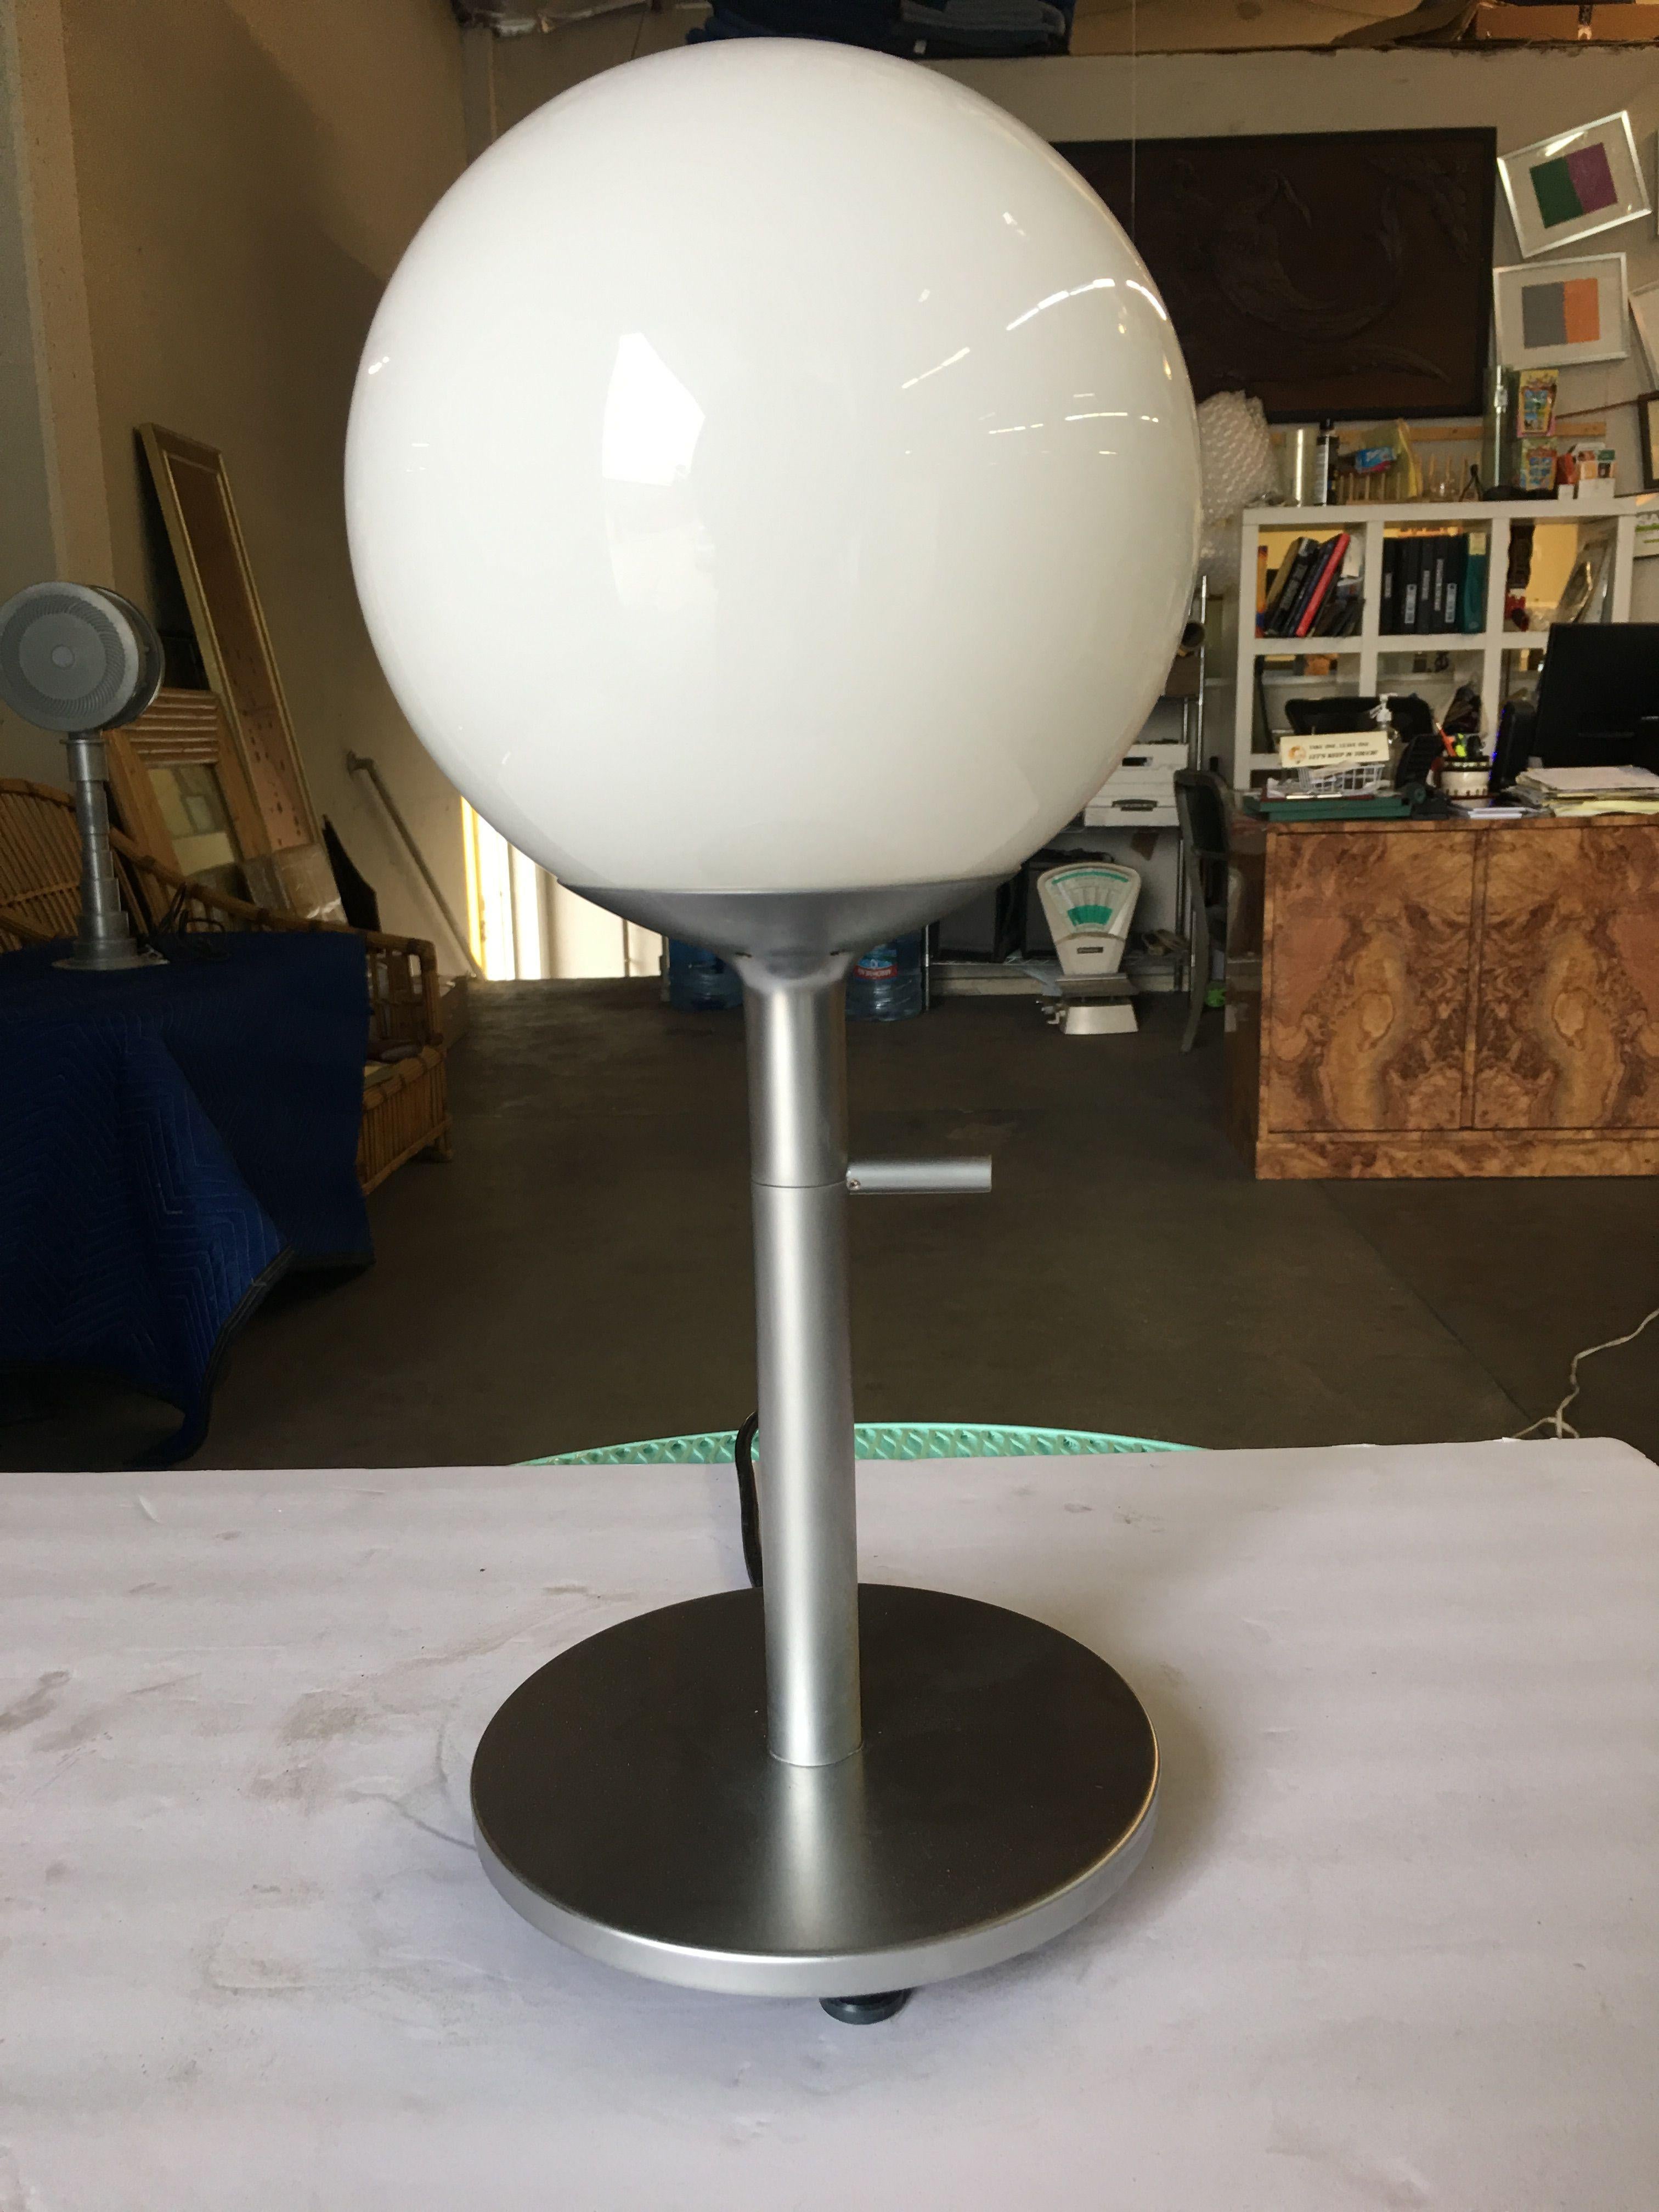 Lampe globe blanche moderne avec base en acier finition chrome satiné.

Disponible- 3